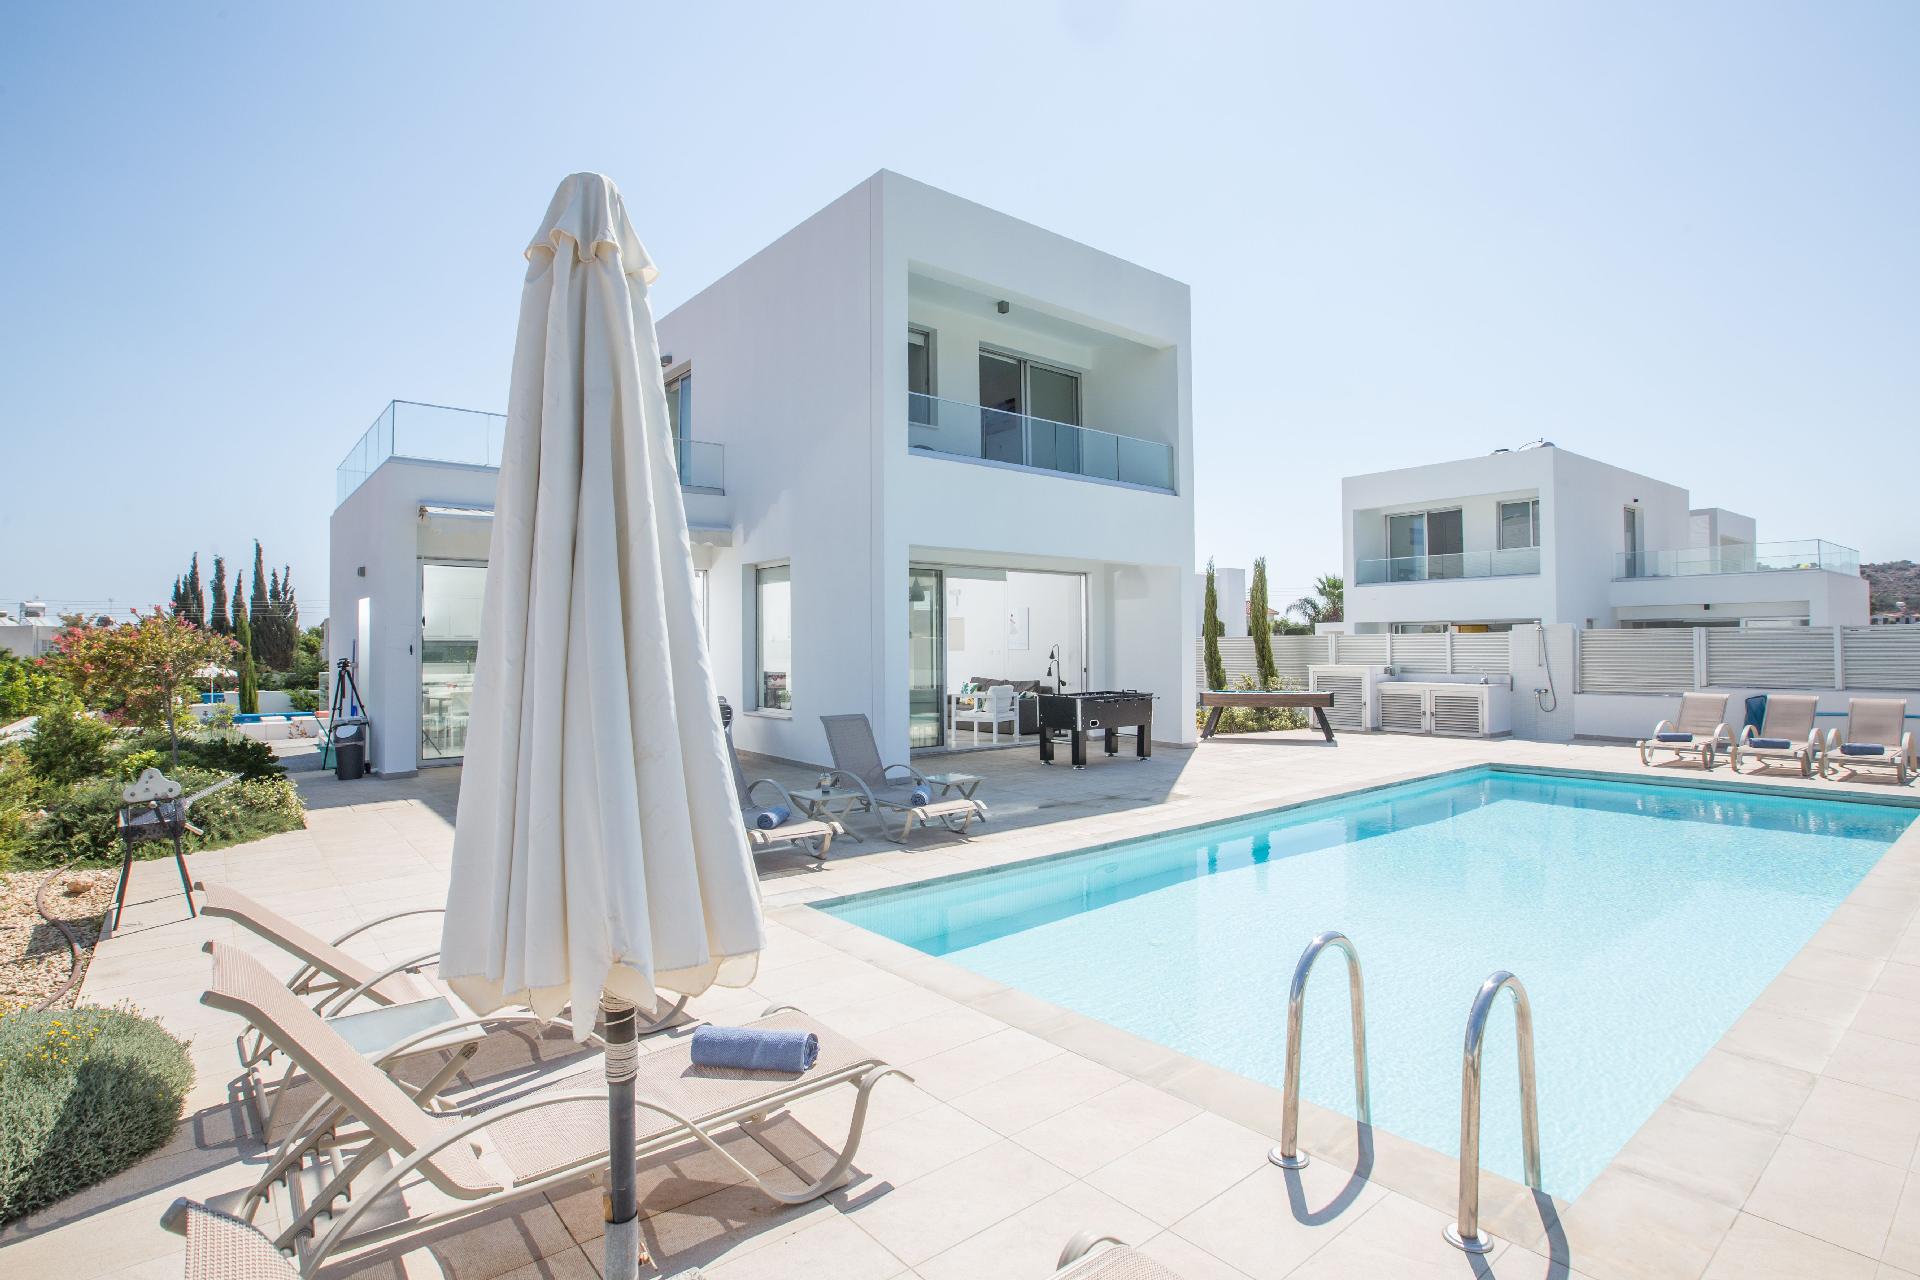 Ferienhaus mit Privatpool für 10 Personen ca. Ferienhaus in Zypern